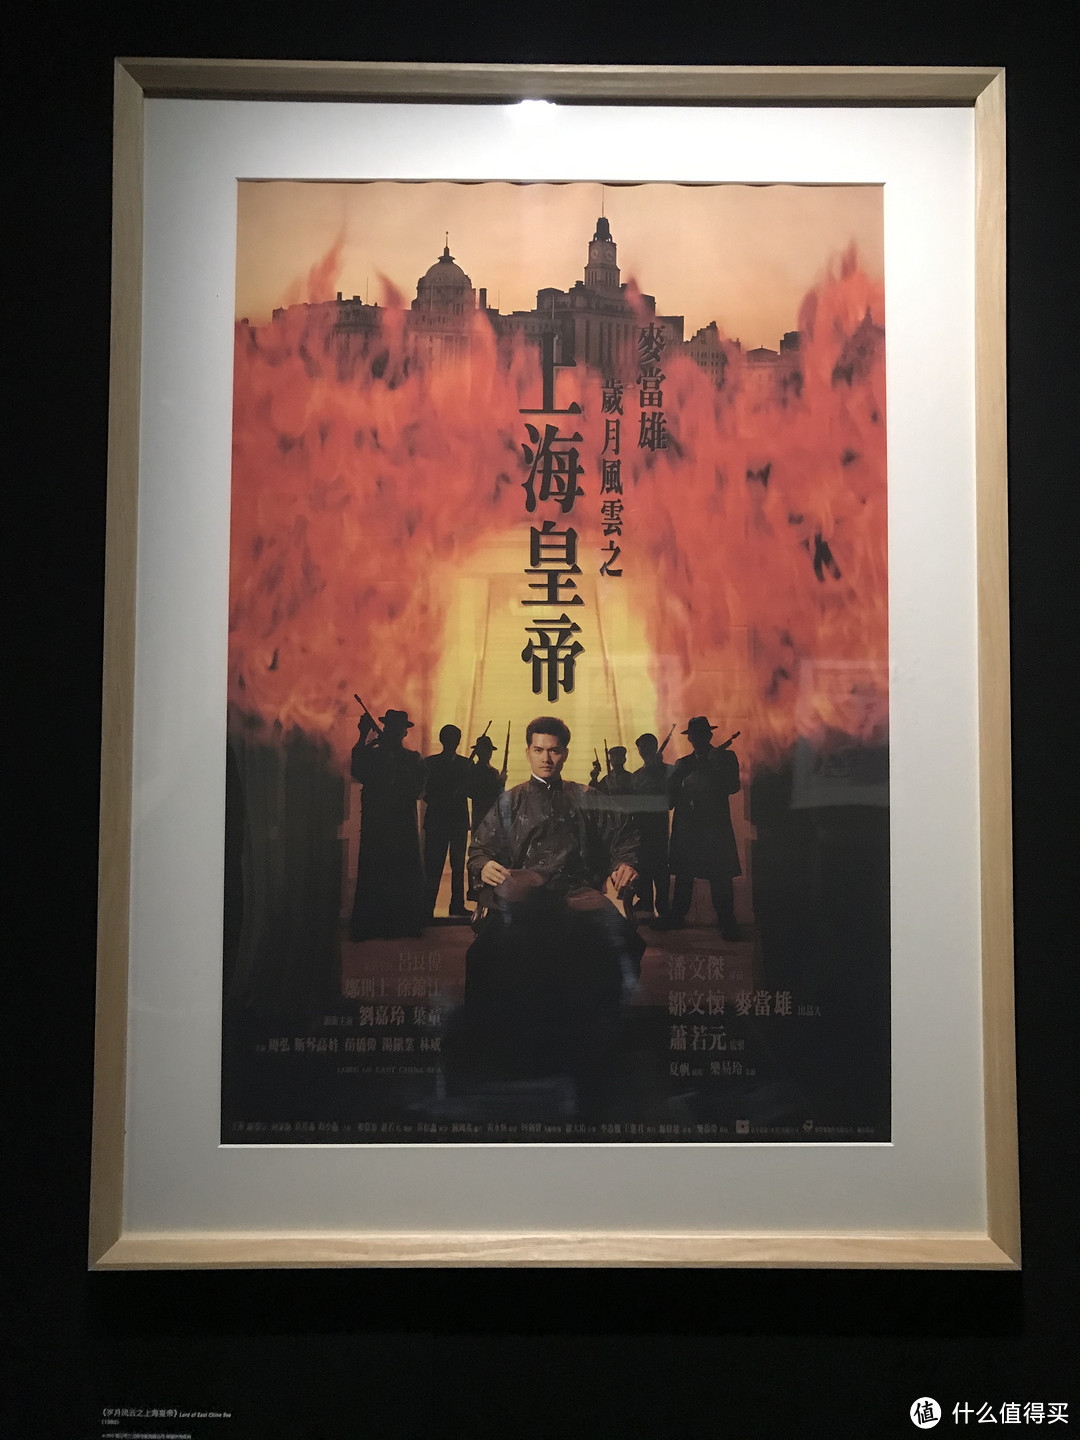 令我印象最深的魔都博物馆——上海电影博物馆